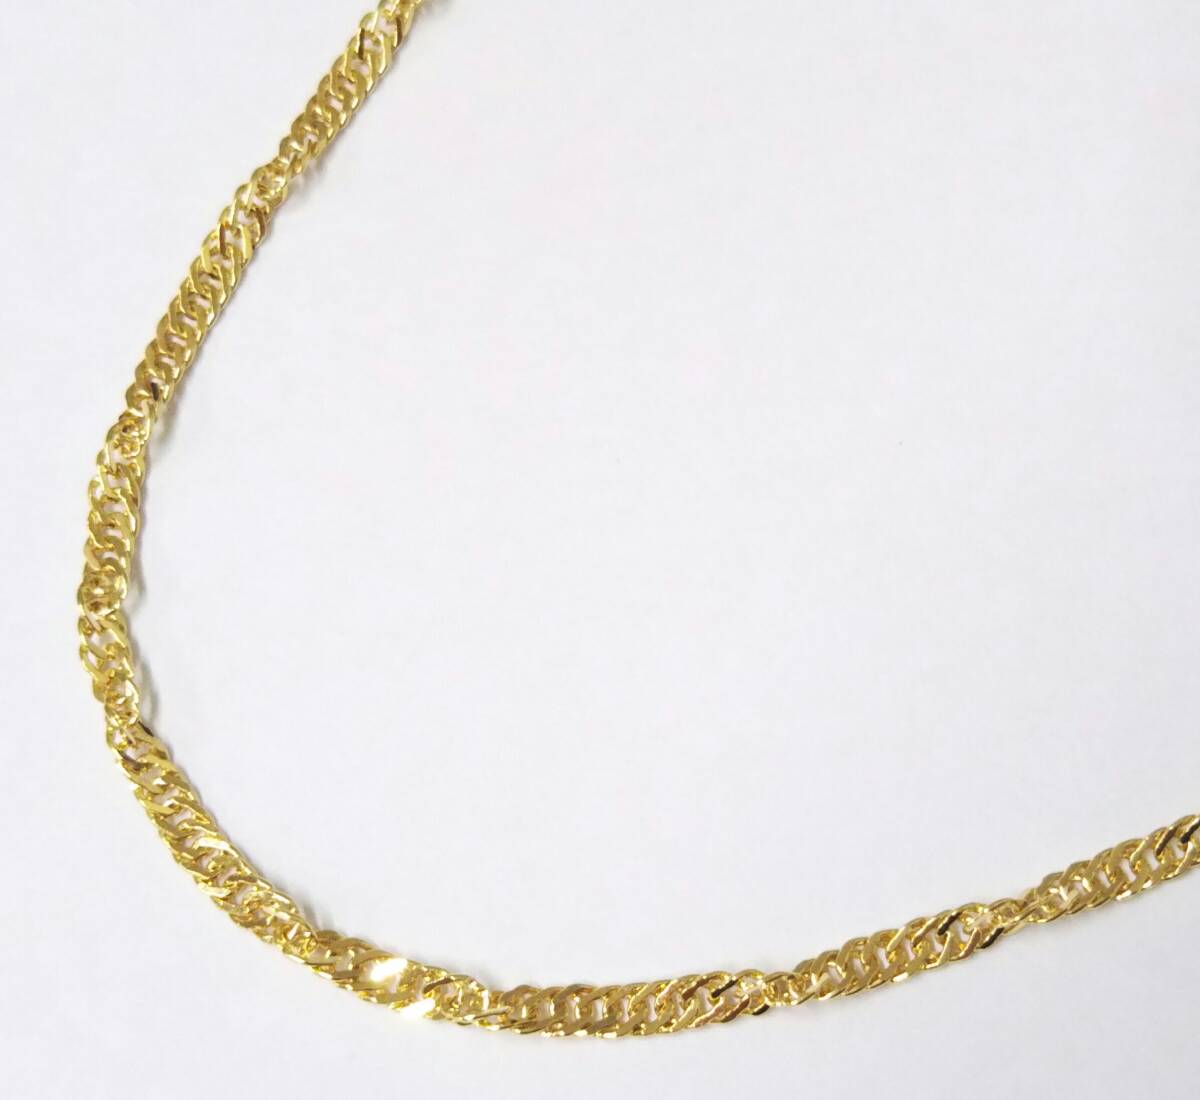 【クリーニング済】K18(750表記) 総重量約4.5g 約40cm ネジレ デザイン ゴールド ネックレス